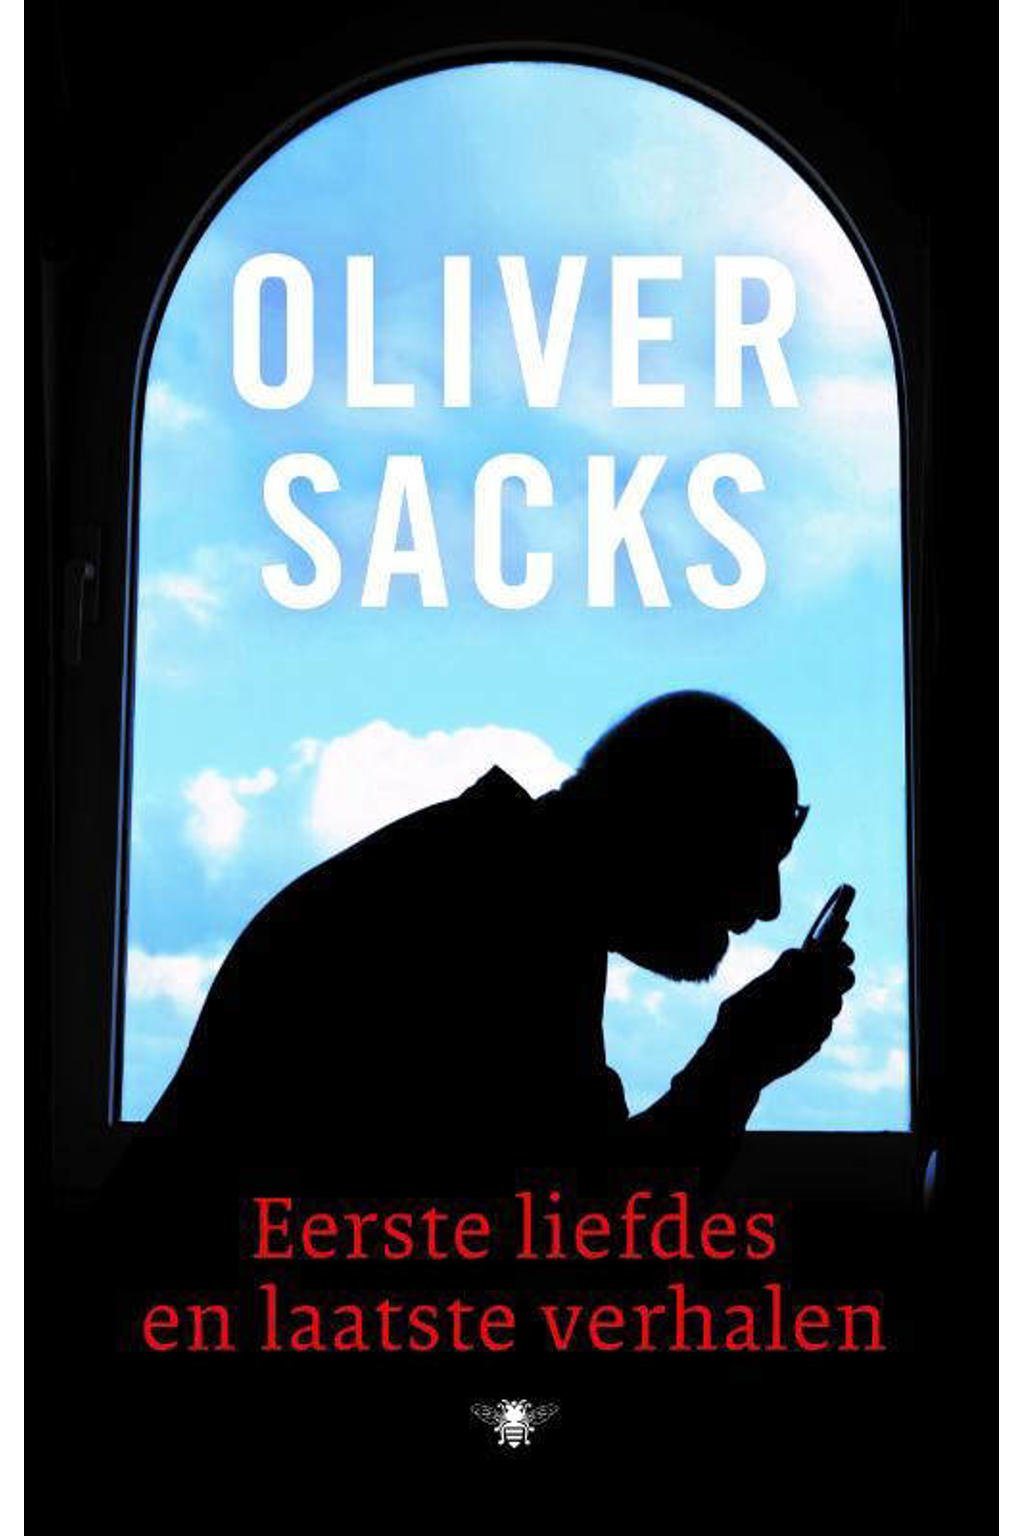 Eerste liefdes en laatste verhalen - Oliver Sacks